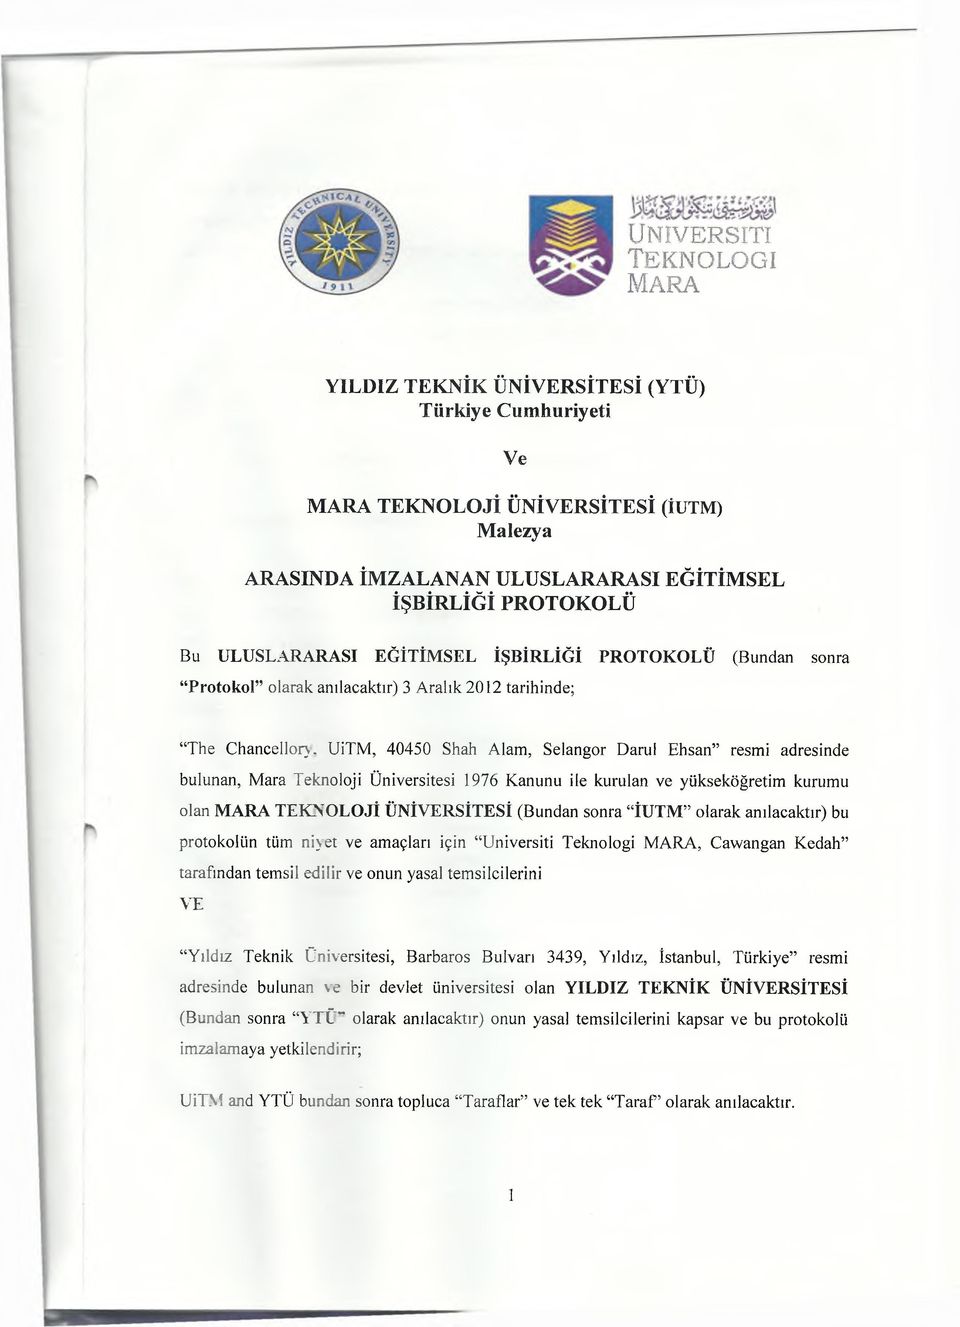 UiTM, 40450 Shah Âlâm, Selangor Darul Ehsan resmi adresinde bulunan, Mara Teknoloji Üniversitesi 1976 Kanunu ile kurulan ve yükseköğretim kurumu olan MARA TEKNOLOJİ ÜNİVERSİTESİ (Bundan sonra İUTM